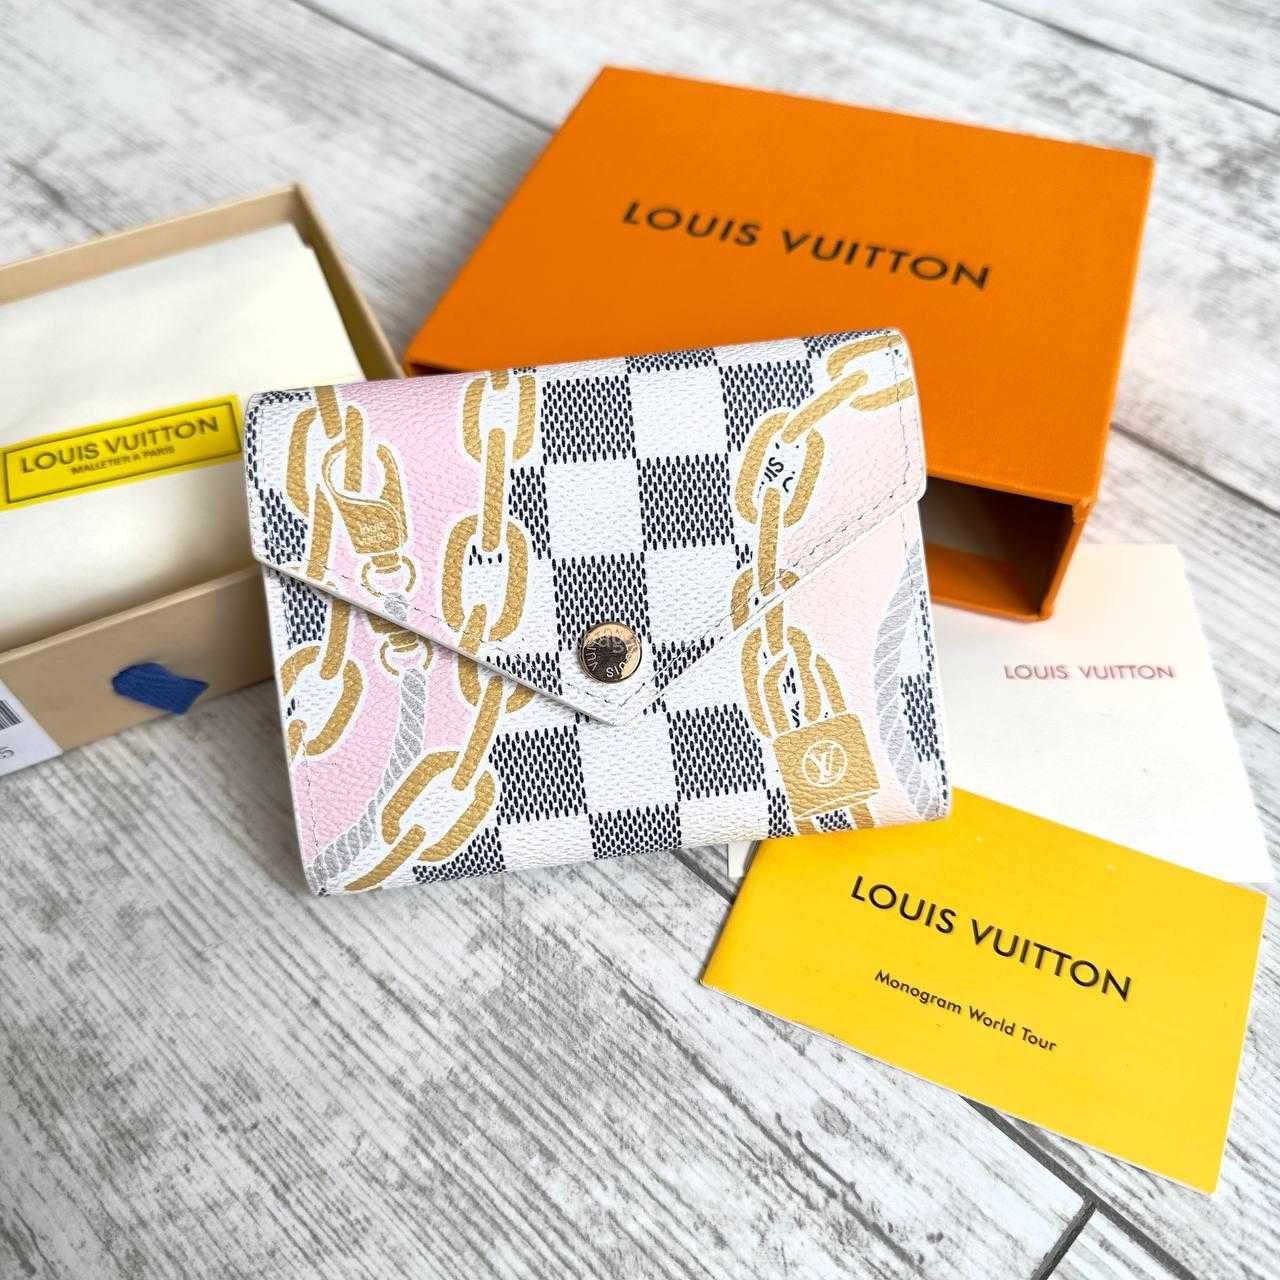 Маленький складной женский кошелек Луи Виттон Louis Vuitton люкс